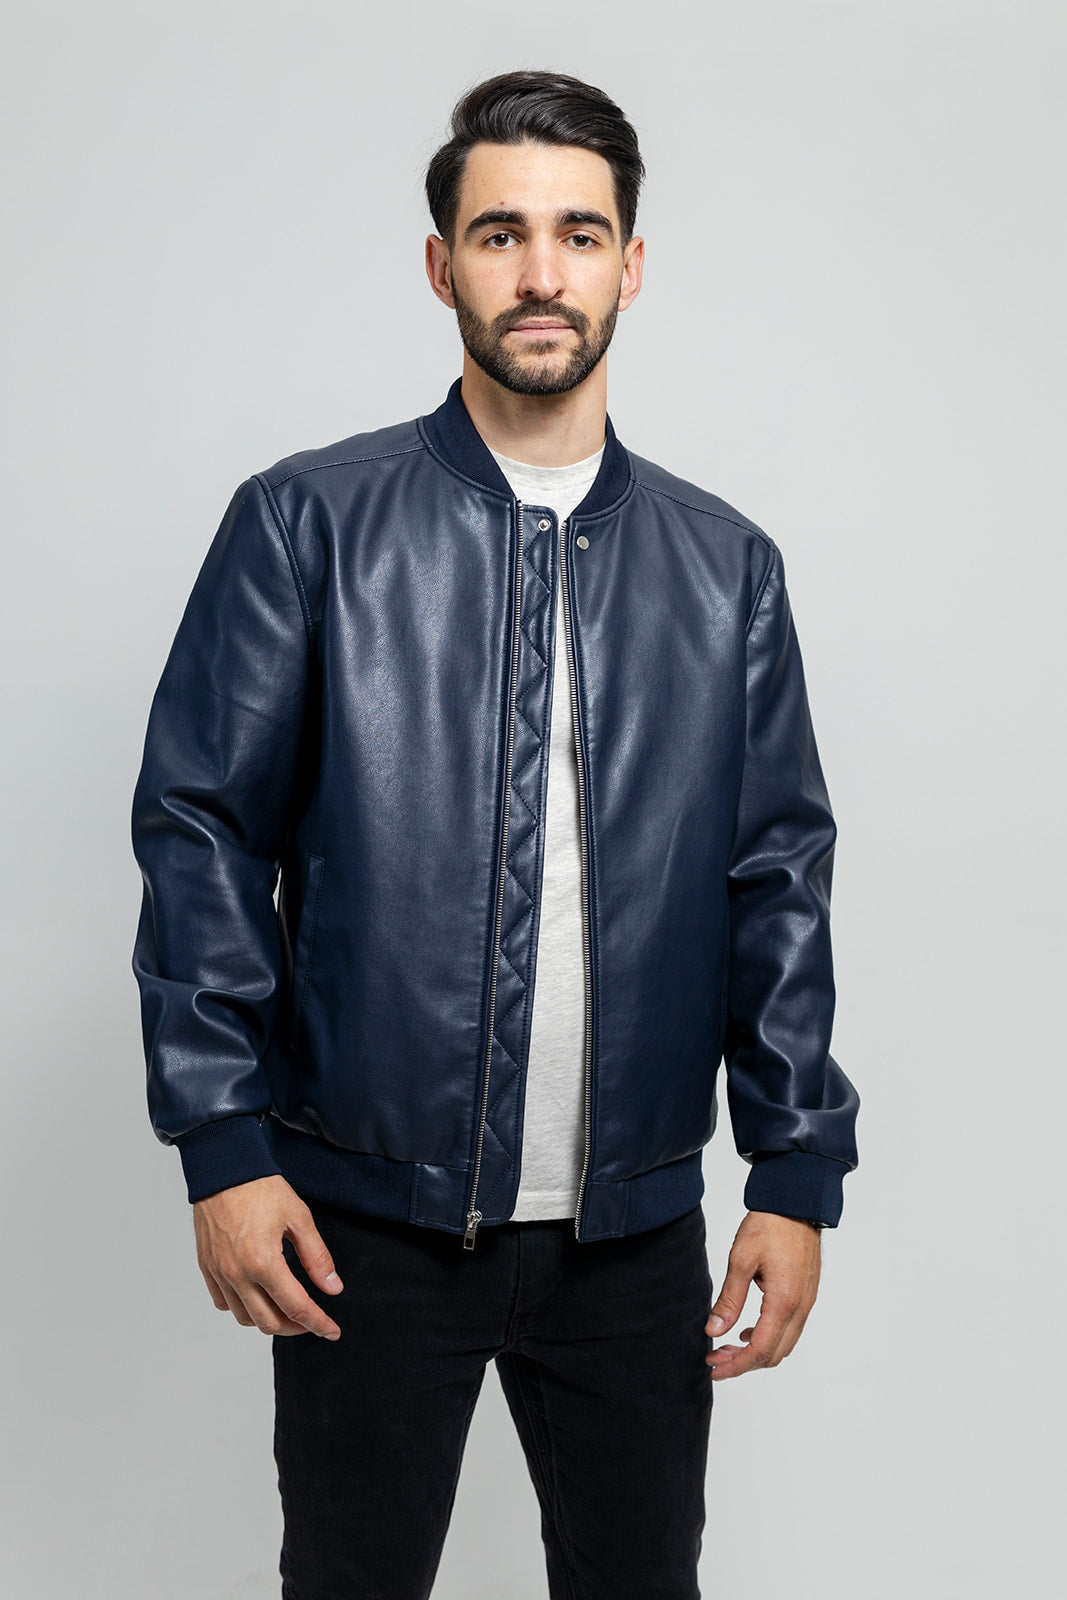 Justin Men's Vegan Faux Leather Jacket (POS) Men's Vegan Faux Leather jacket Whet Blu NYC S Navy 